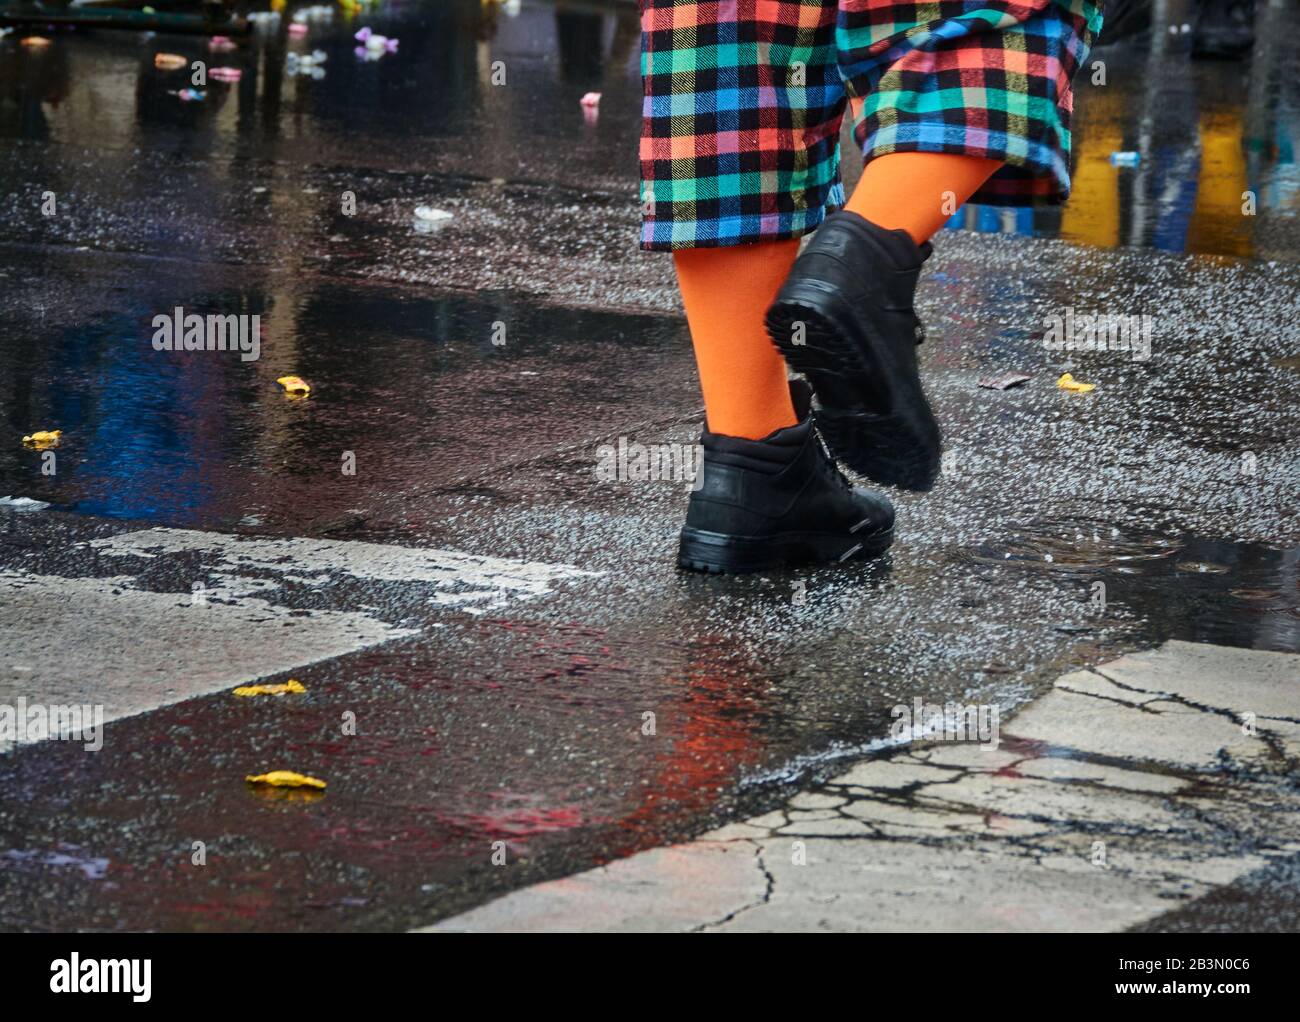 Piernas con coloridos pantalones de cuadros, calcetines de color naranja brillante y medias negras que se pisan sobre asfalto gris oscuro mojado Foto de stock